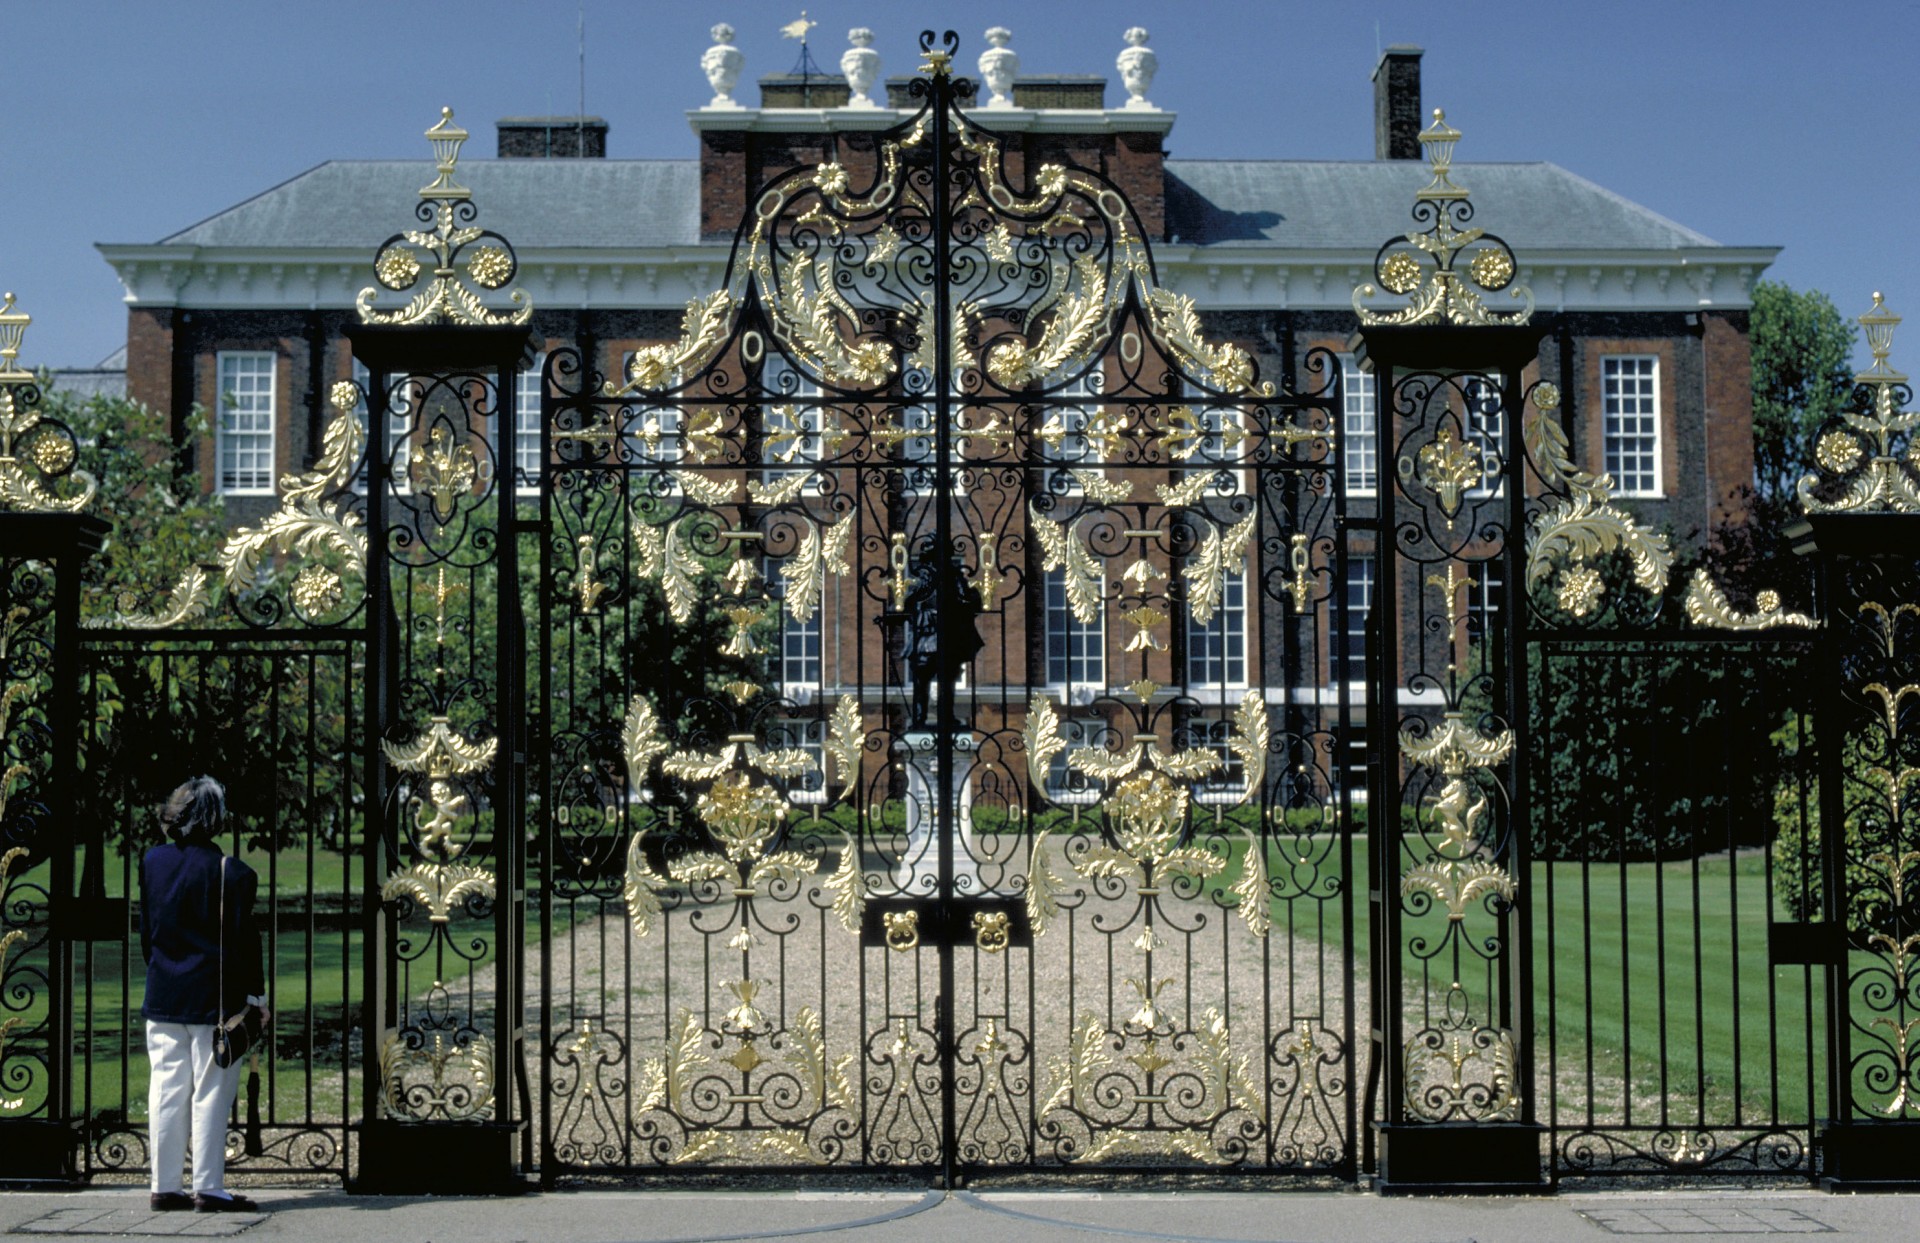 Kensington Palace - Exterior Gate.